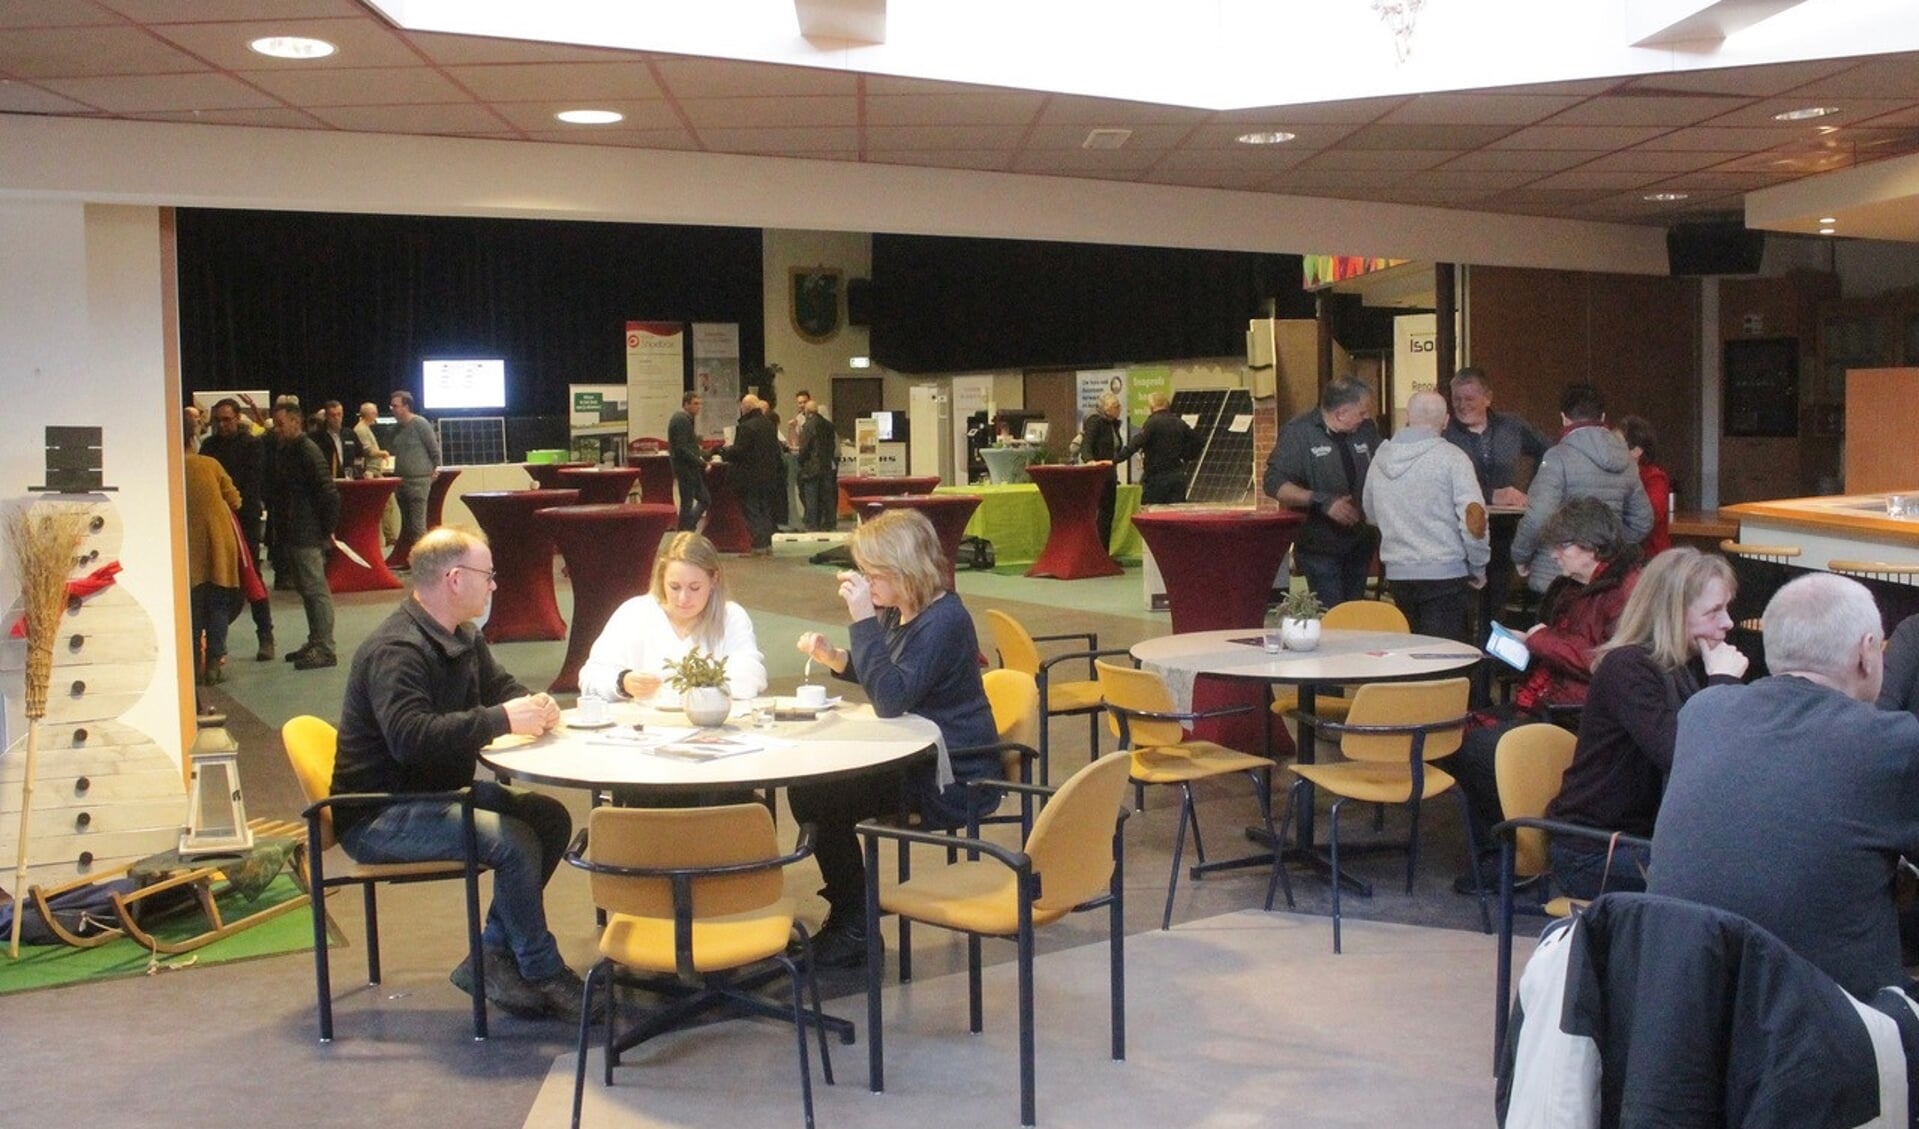 Op zondag 3 februari werd in MFA Oelbroeck een geslaagde energiebeurs gehouden. Deze trok ruim 600 bezoekers. (foto: Kees de Bruijn) 